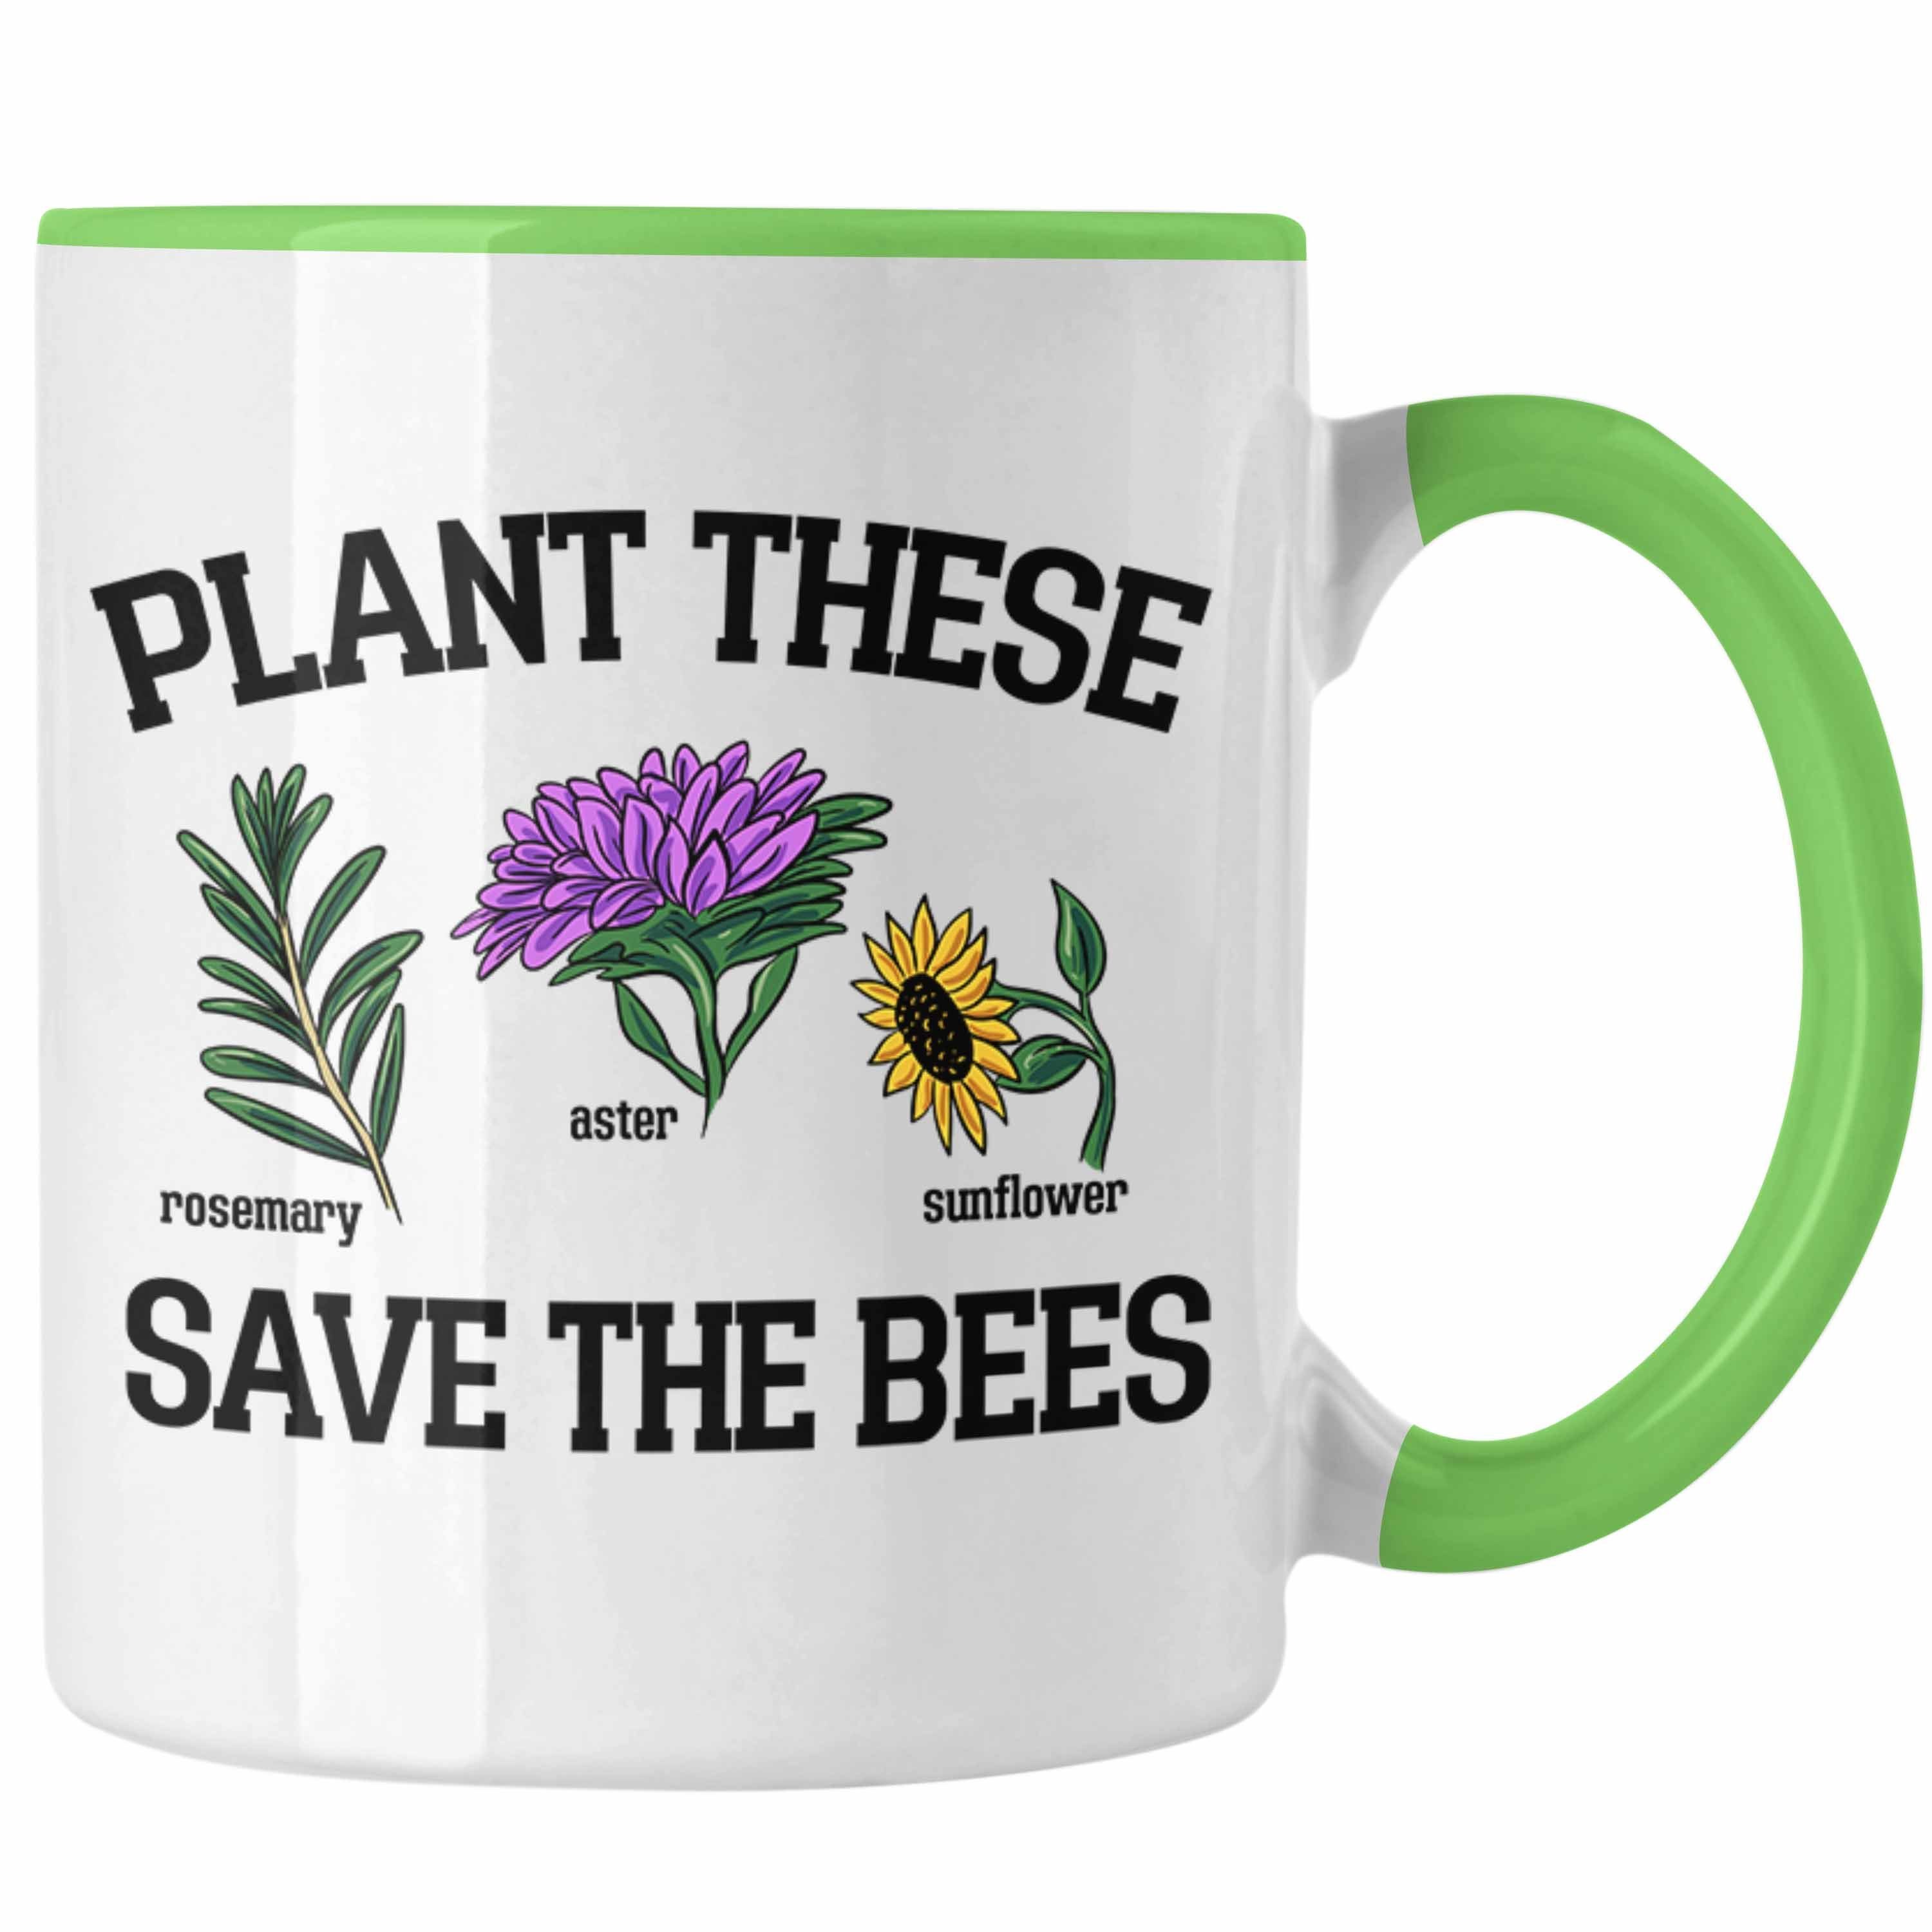 Trendation Tasse Lustige Tasse für Bienenliebhaber Plant These Save The Bees Geschenk Grün